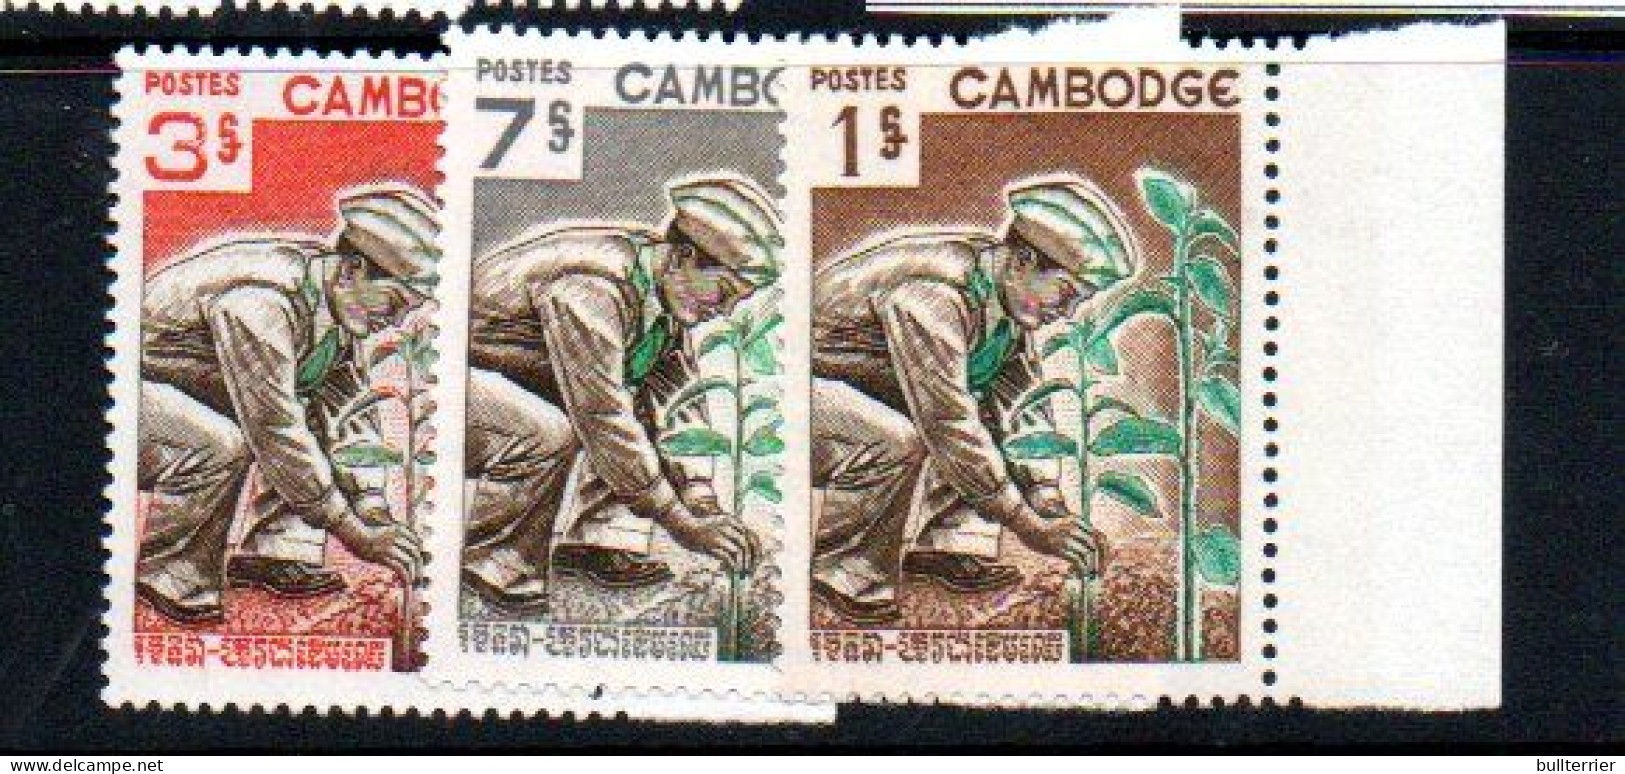 CAMBODIA -  1966  - TREE DAY SET OF 3 MINT NEVER HINGED - Cambodia